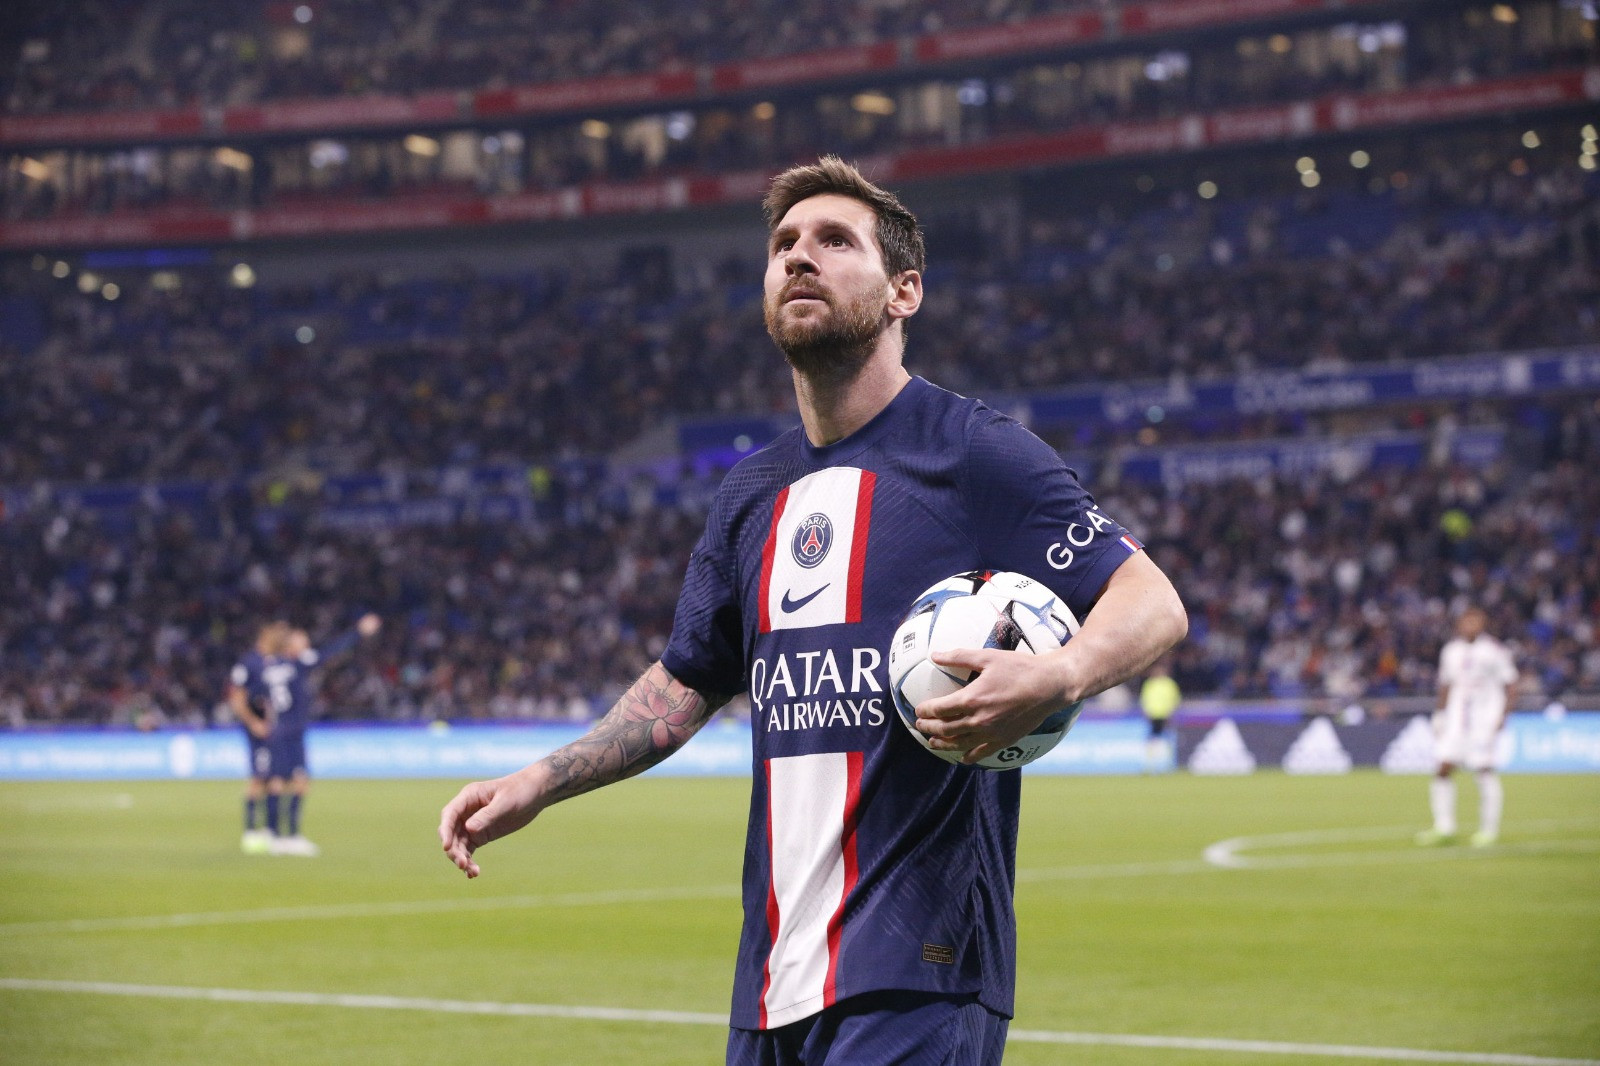 Lionel Messi PSG: Chính thức ra mắt PSG, Lionel Messi đã trở thành niềm tự hào của cả đội. Hãy xem những bức ảnh đầu tiên của Messi trong màu áo PSG và cảm nhận sự thích thú của người hâm mộ trên toàn thế giới.